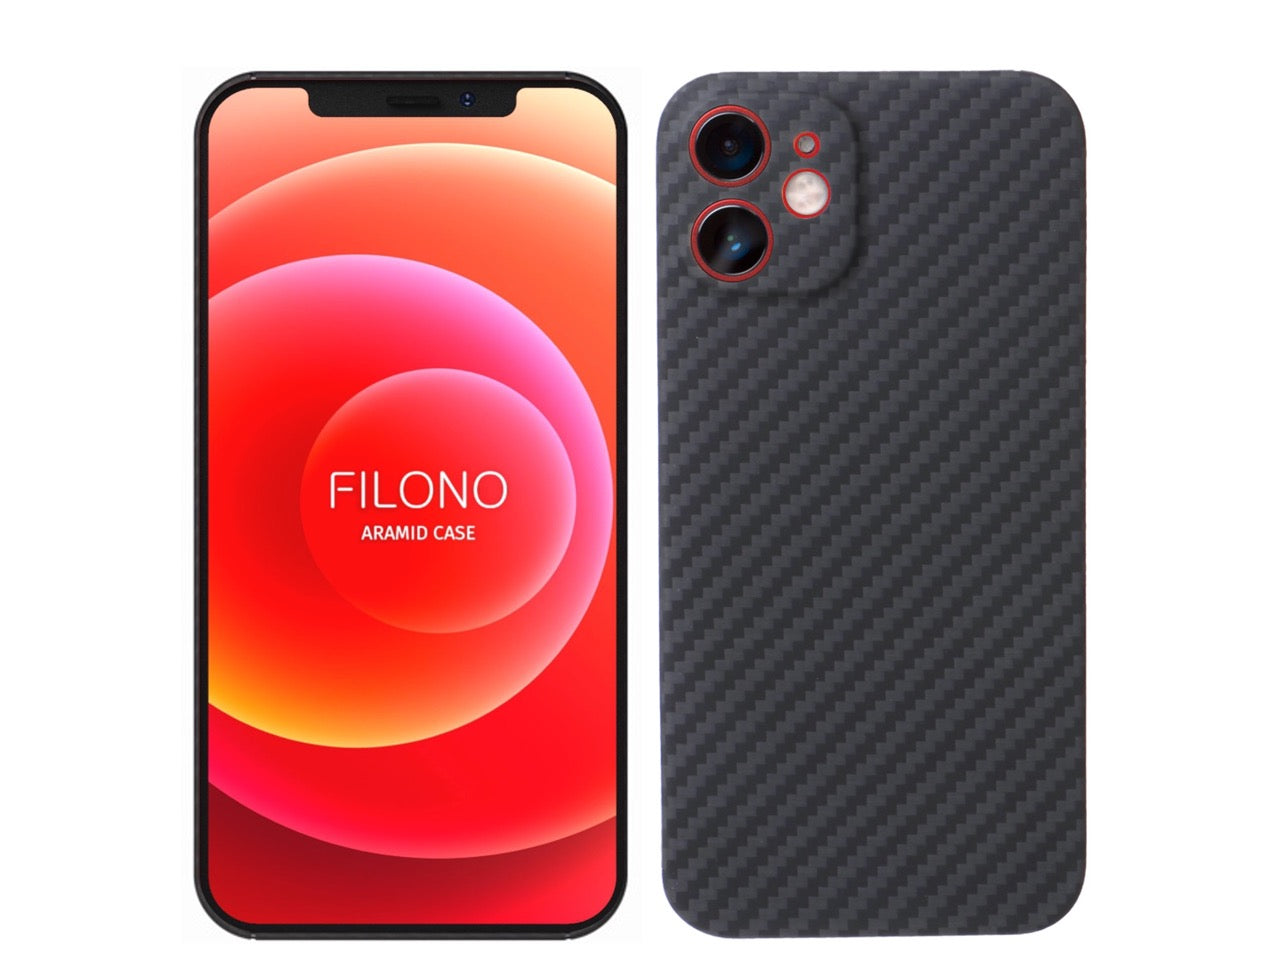 Ultraleichte iPhone 12 Pro Hülle aus Aramidfasern – FILONO